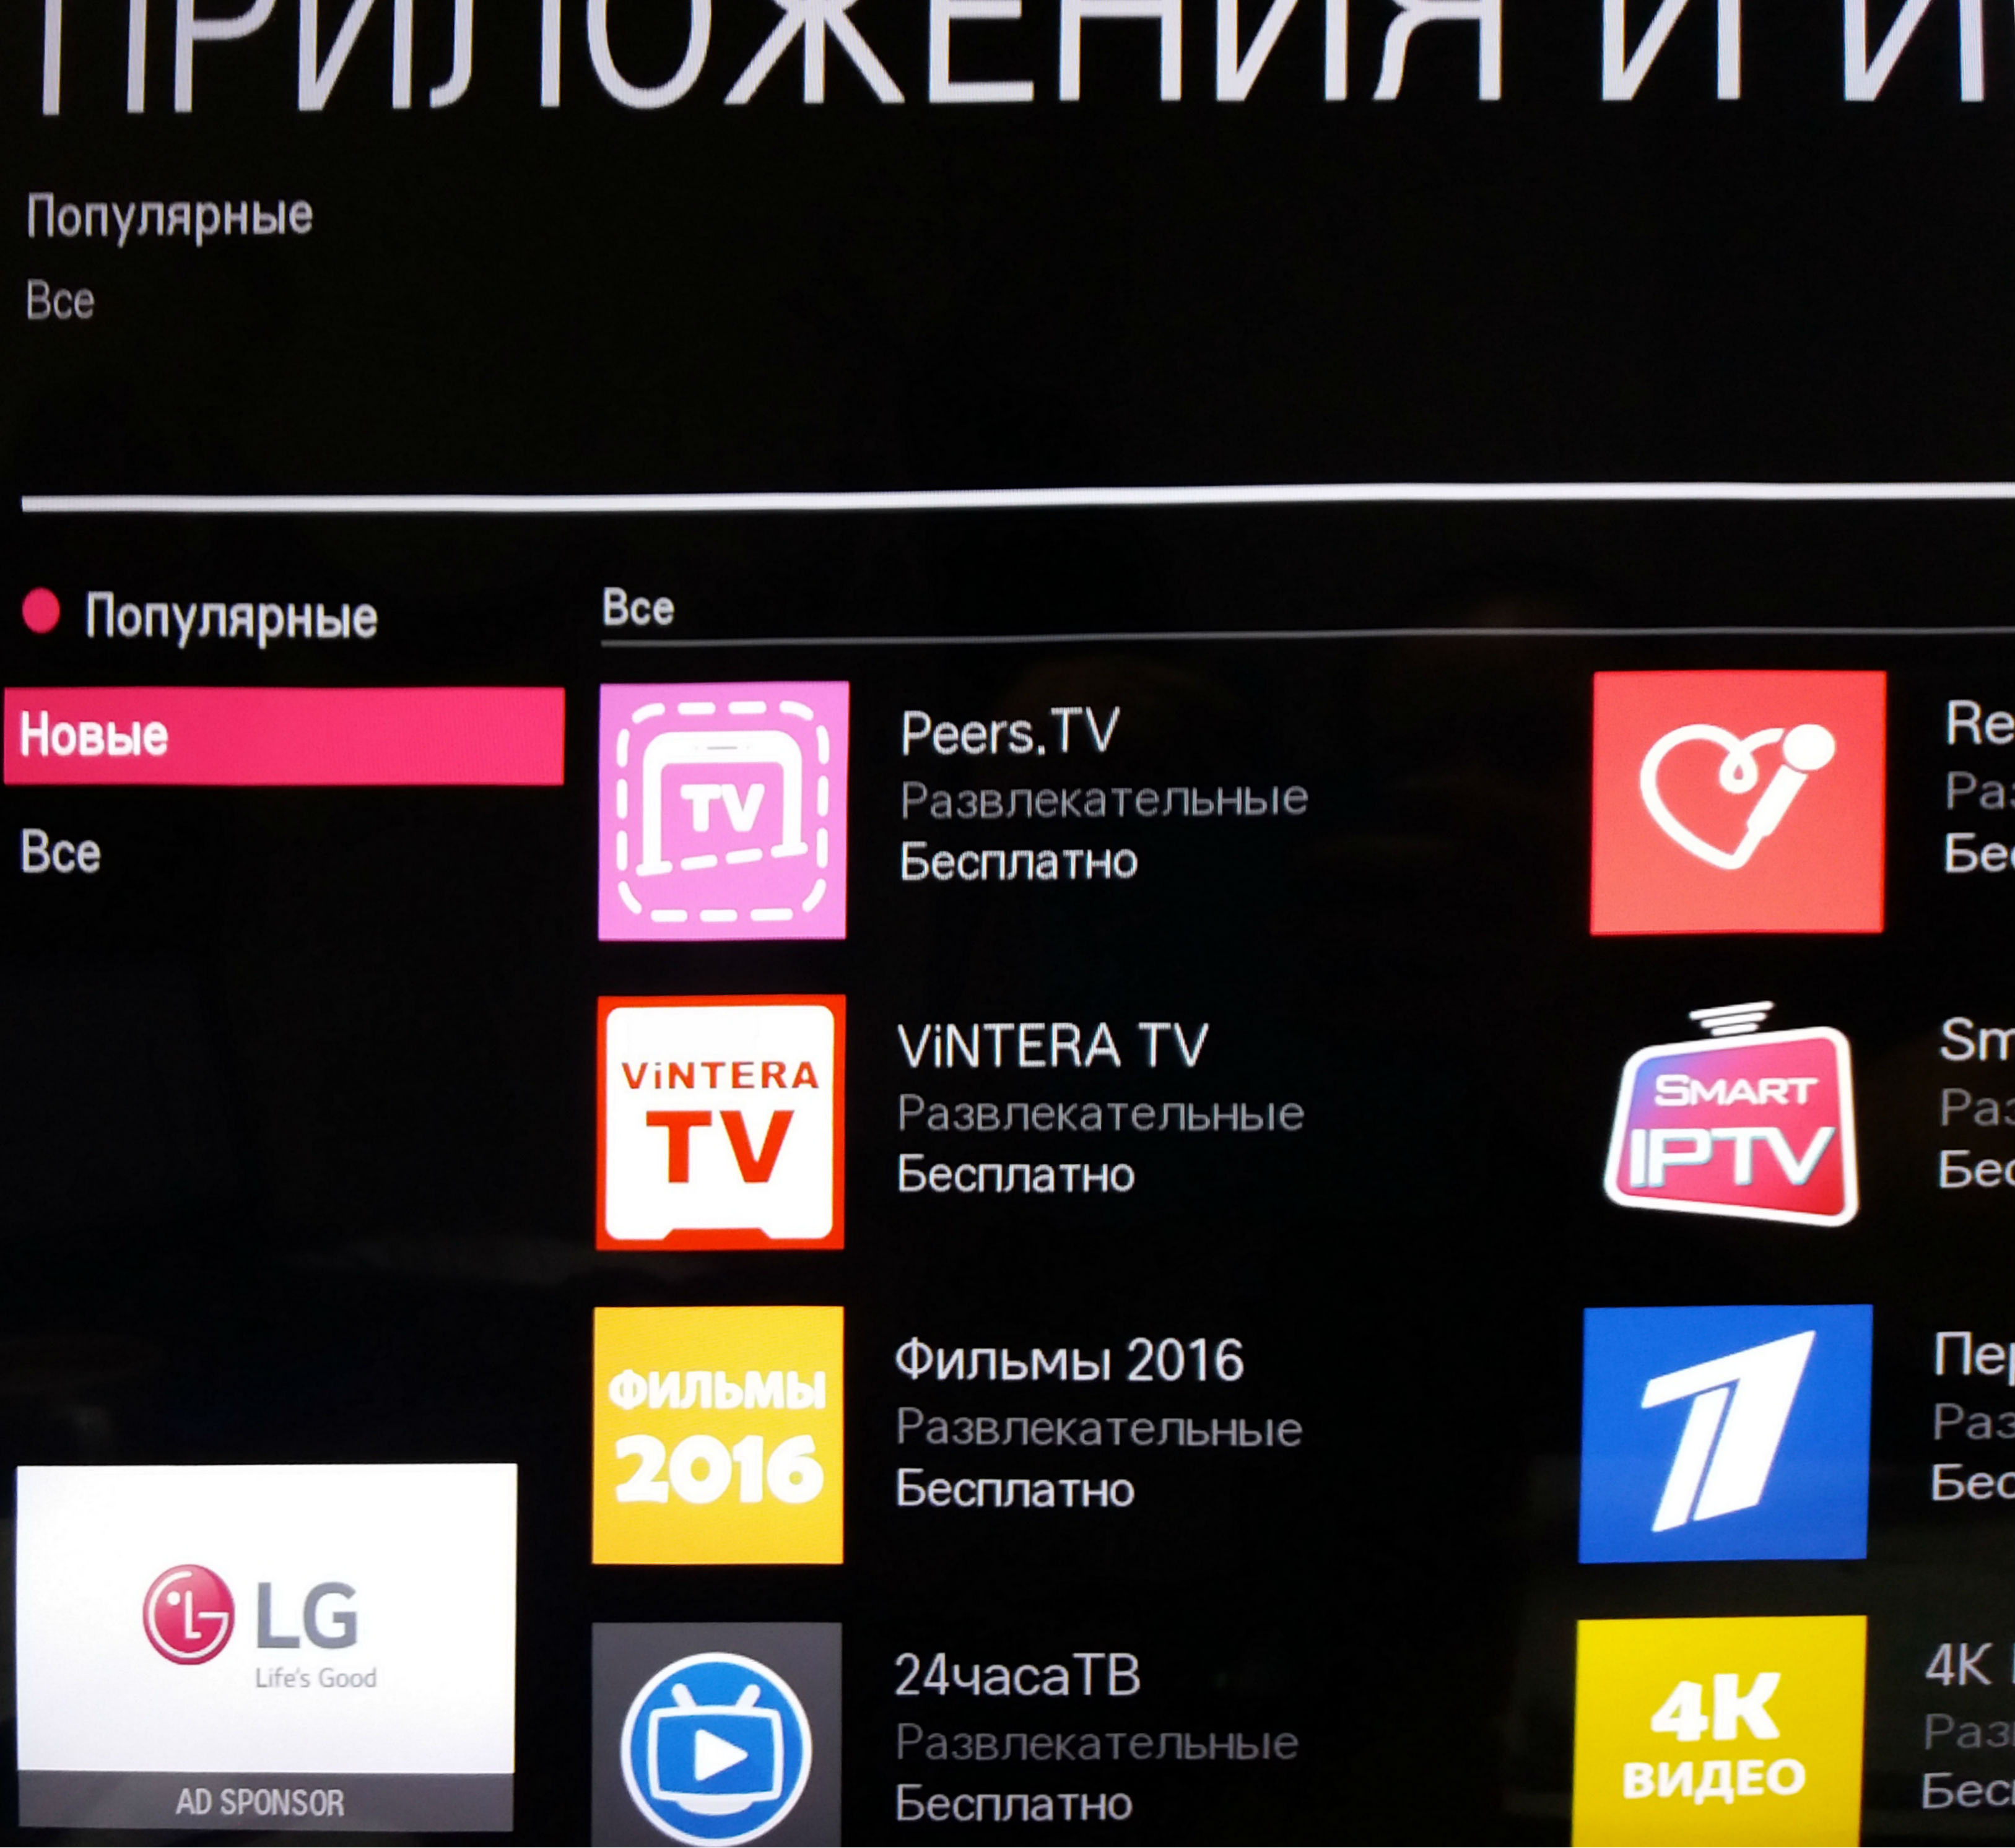 Приложение 1 на телевизор. LG Smart Store TV приложения. Приложения для телевизора LG Smart TV. Приложение IPTV для LG Smart TV. Магазин приложений на телевизоре LG.